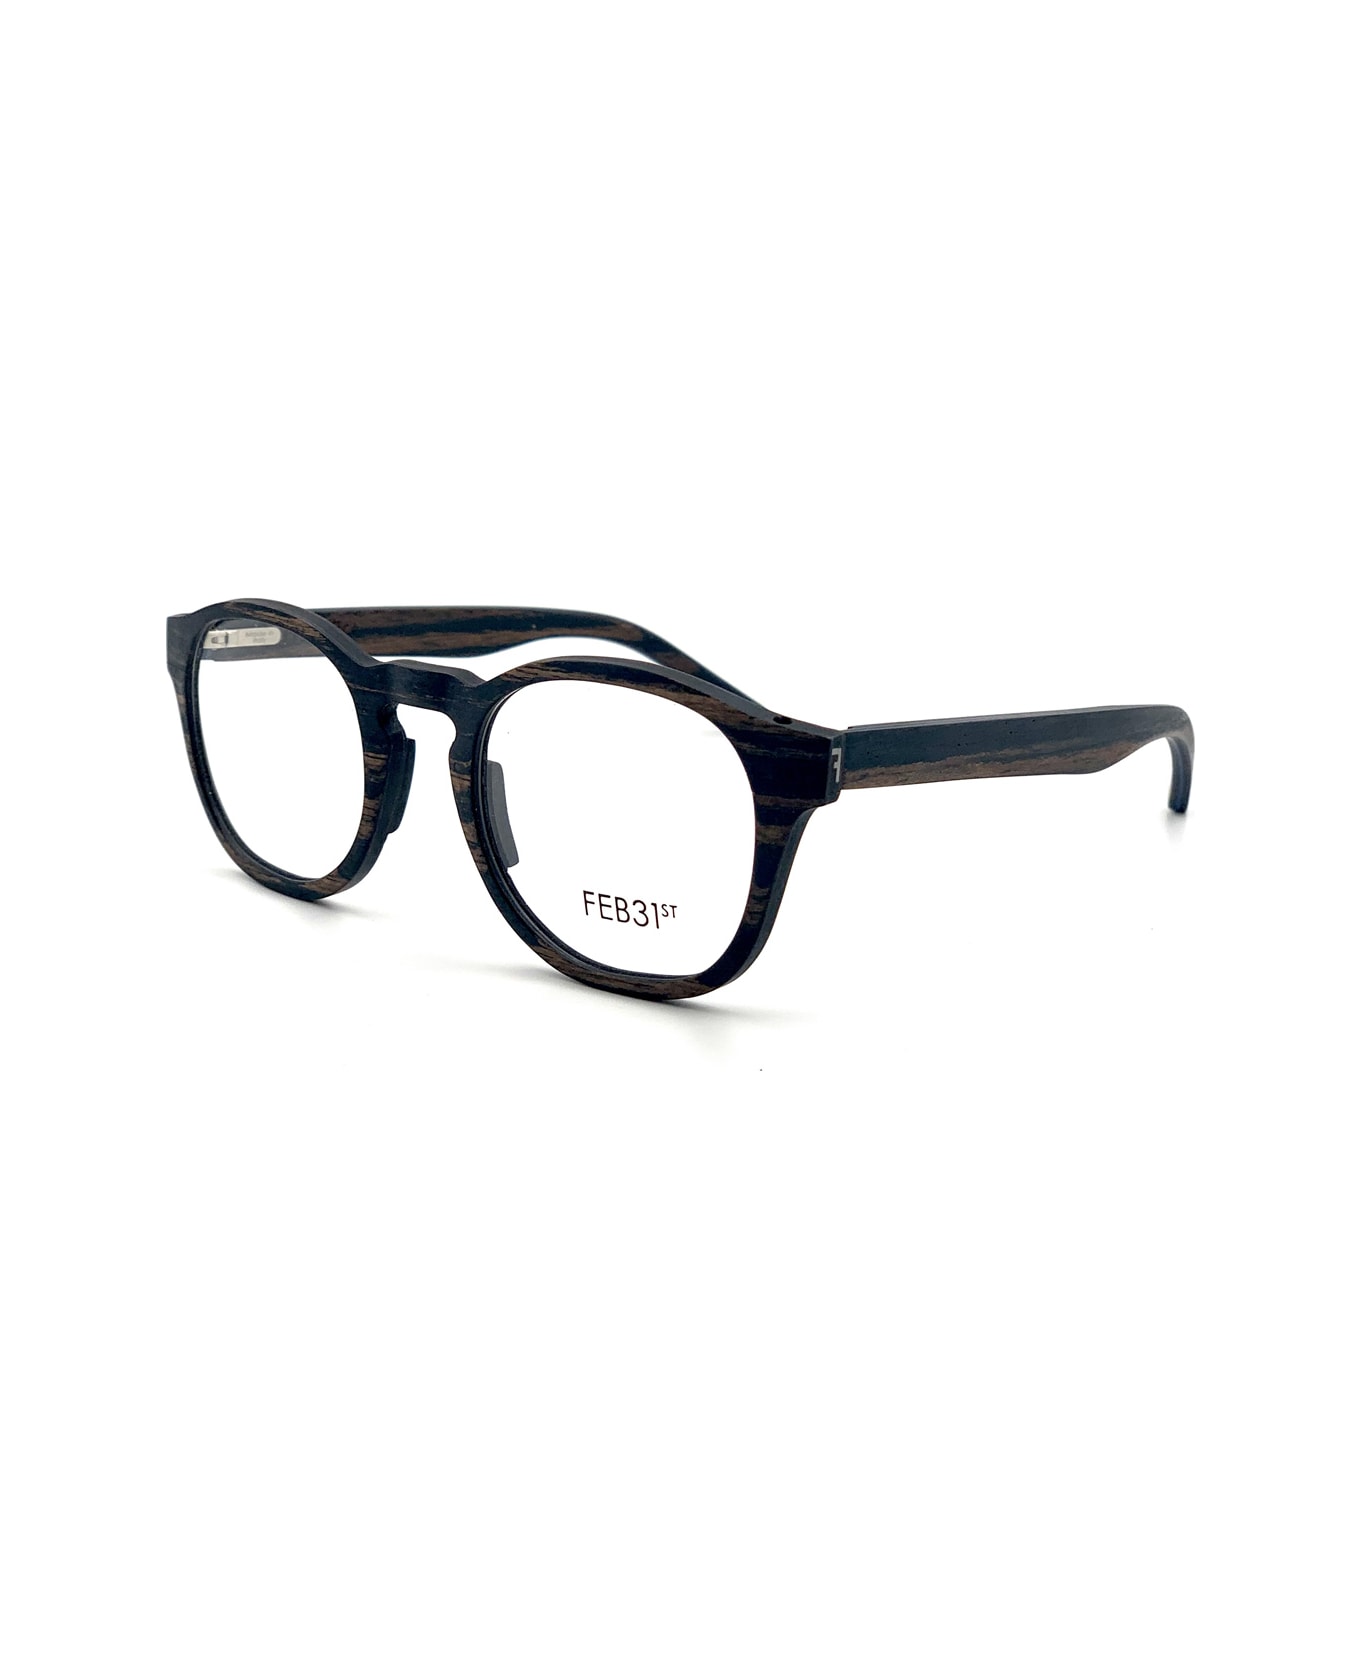 Feb31st Pavo Marrone Glasses - Marrone